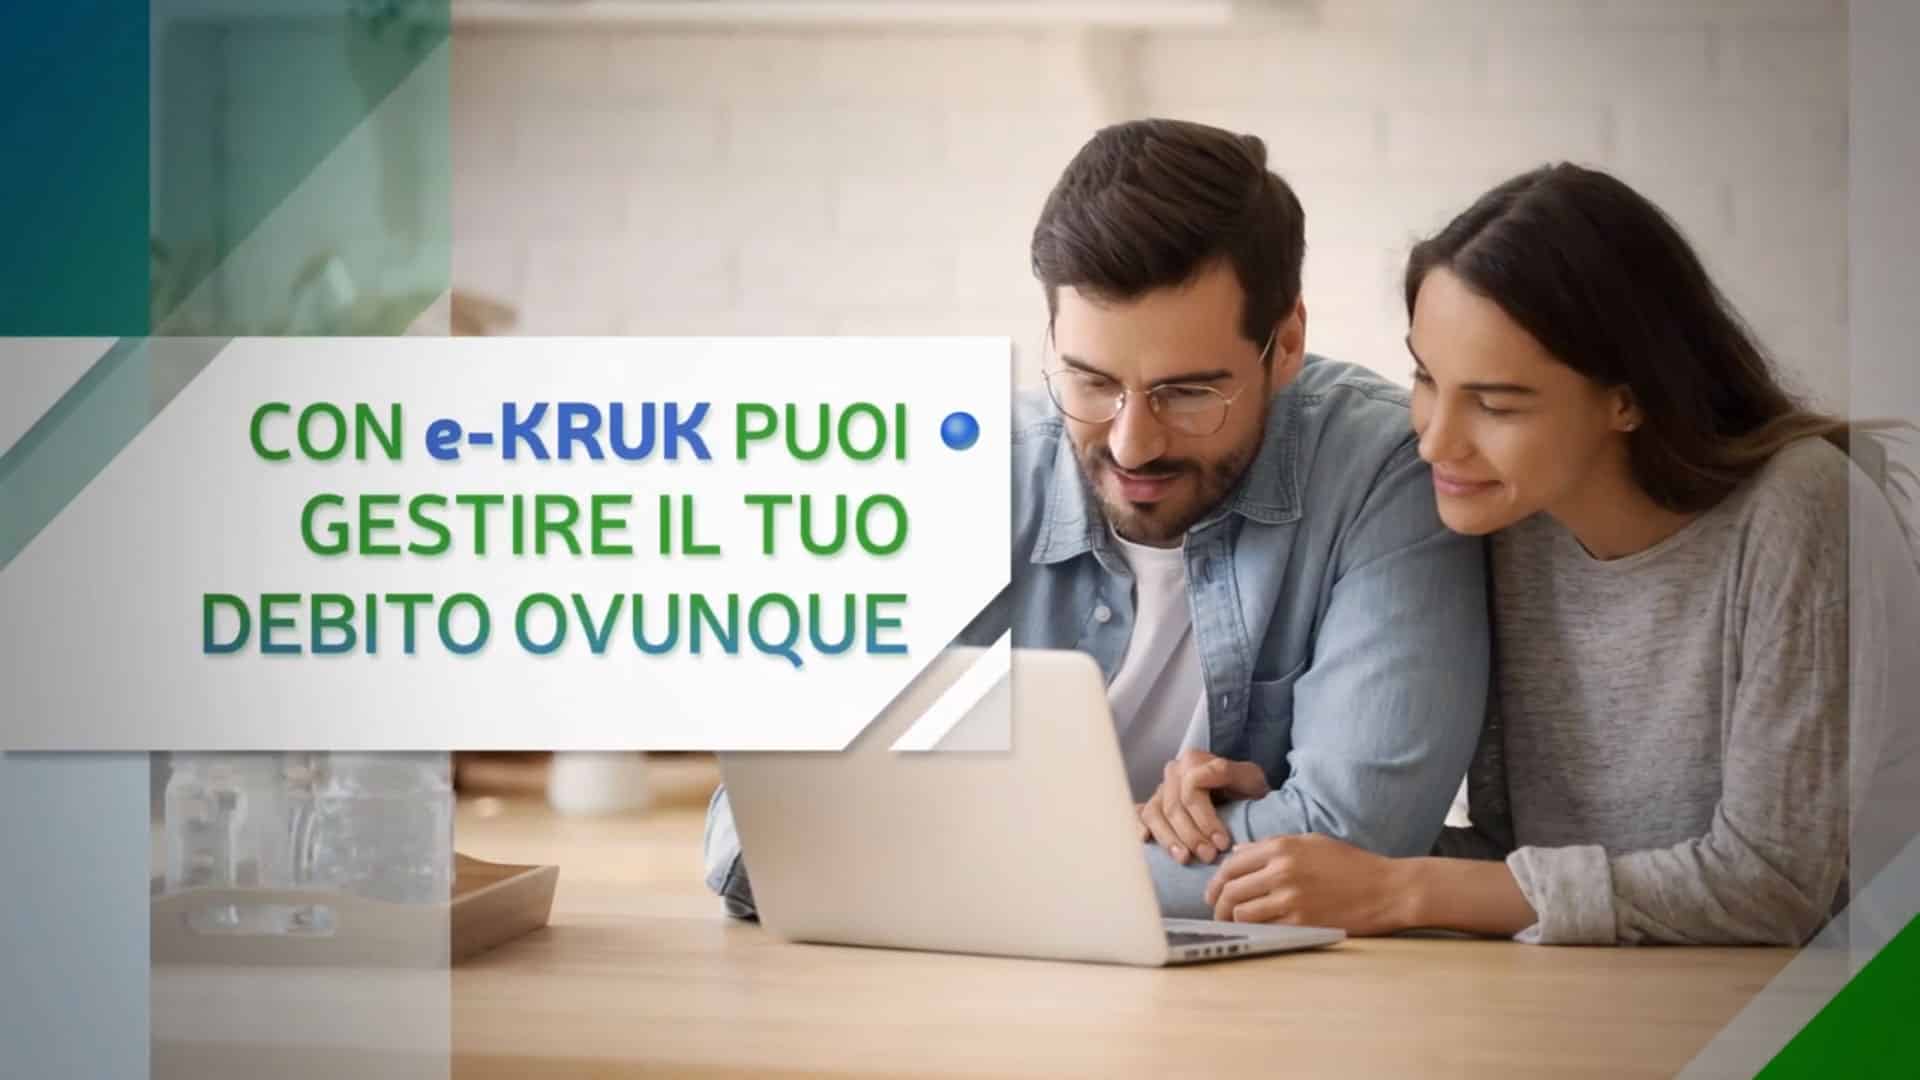 KRUK ADV 15sec - CONTROLLO STORICO - Campagna promozionale per Youtube  -  Kruk Italia 2021